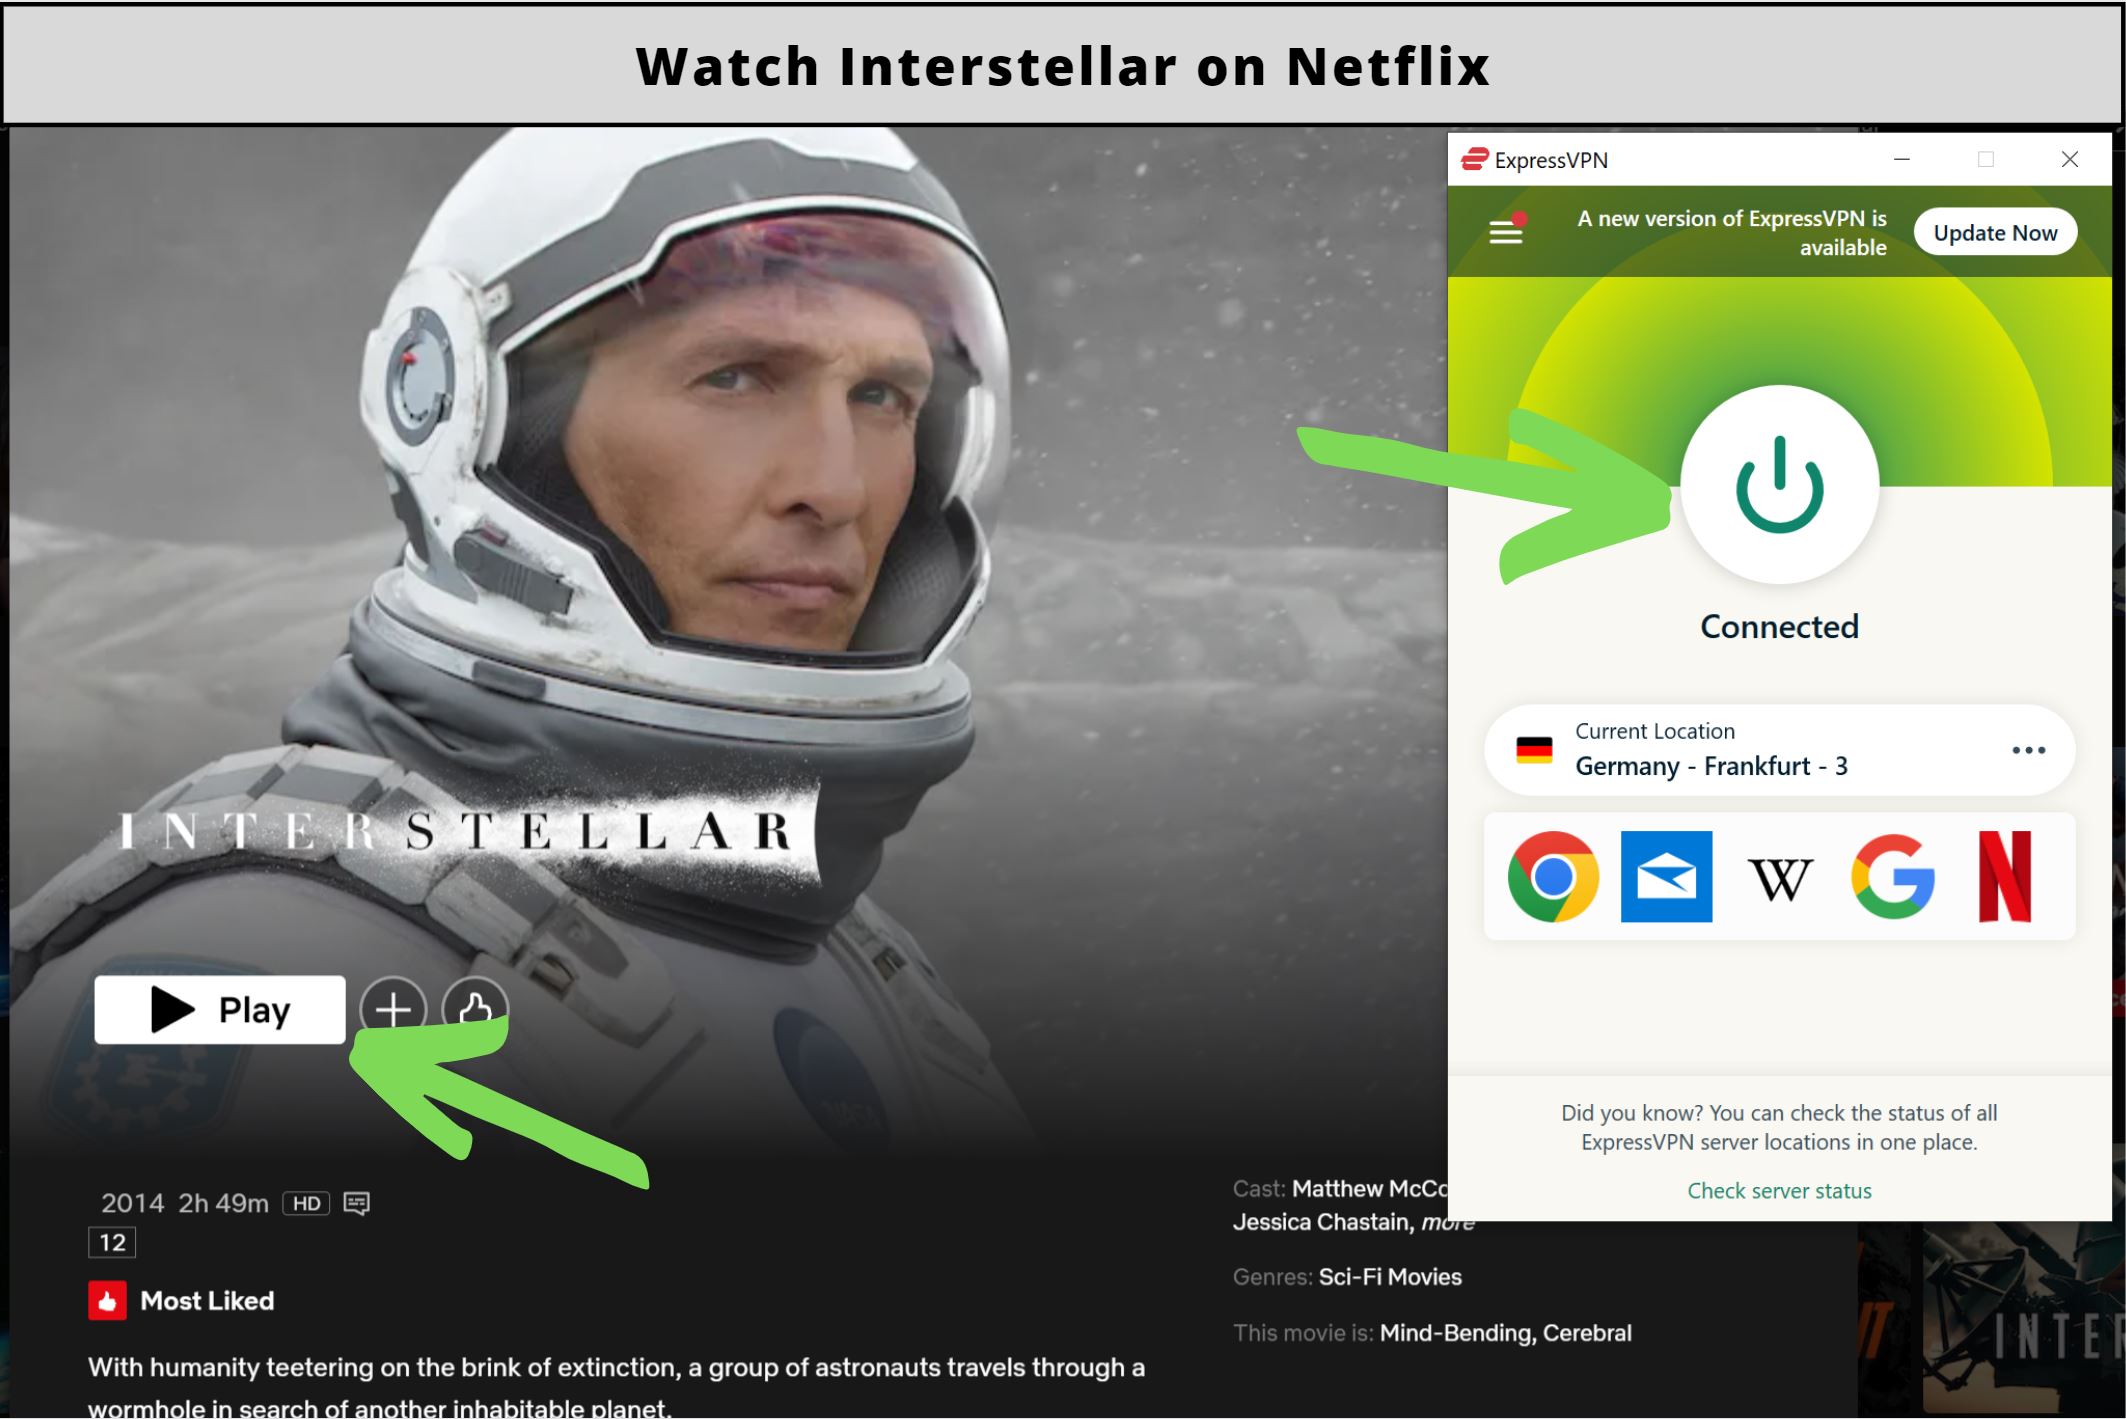 How to watch Interstellar on Netflix